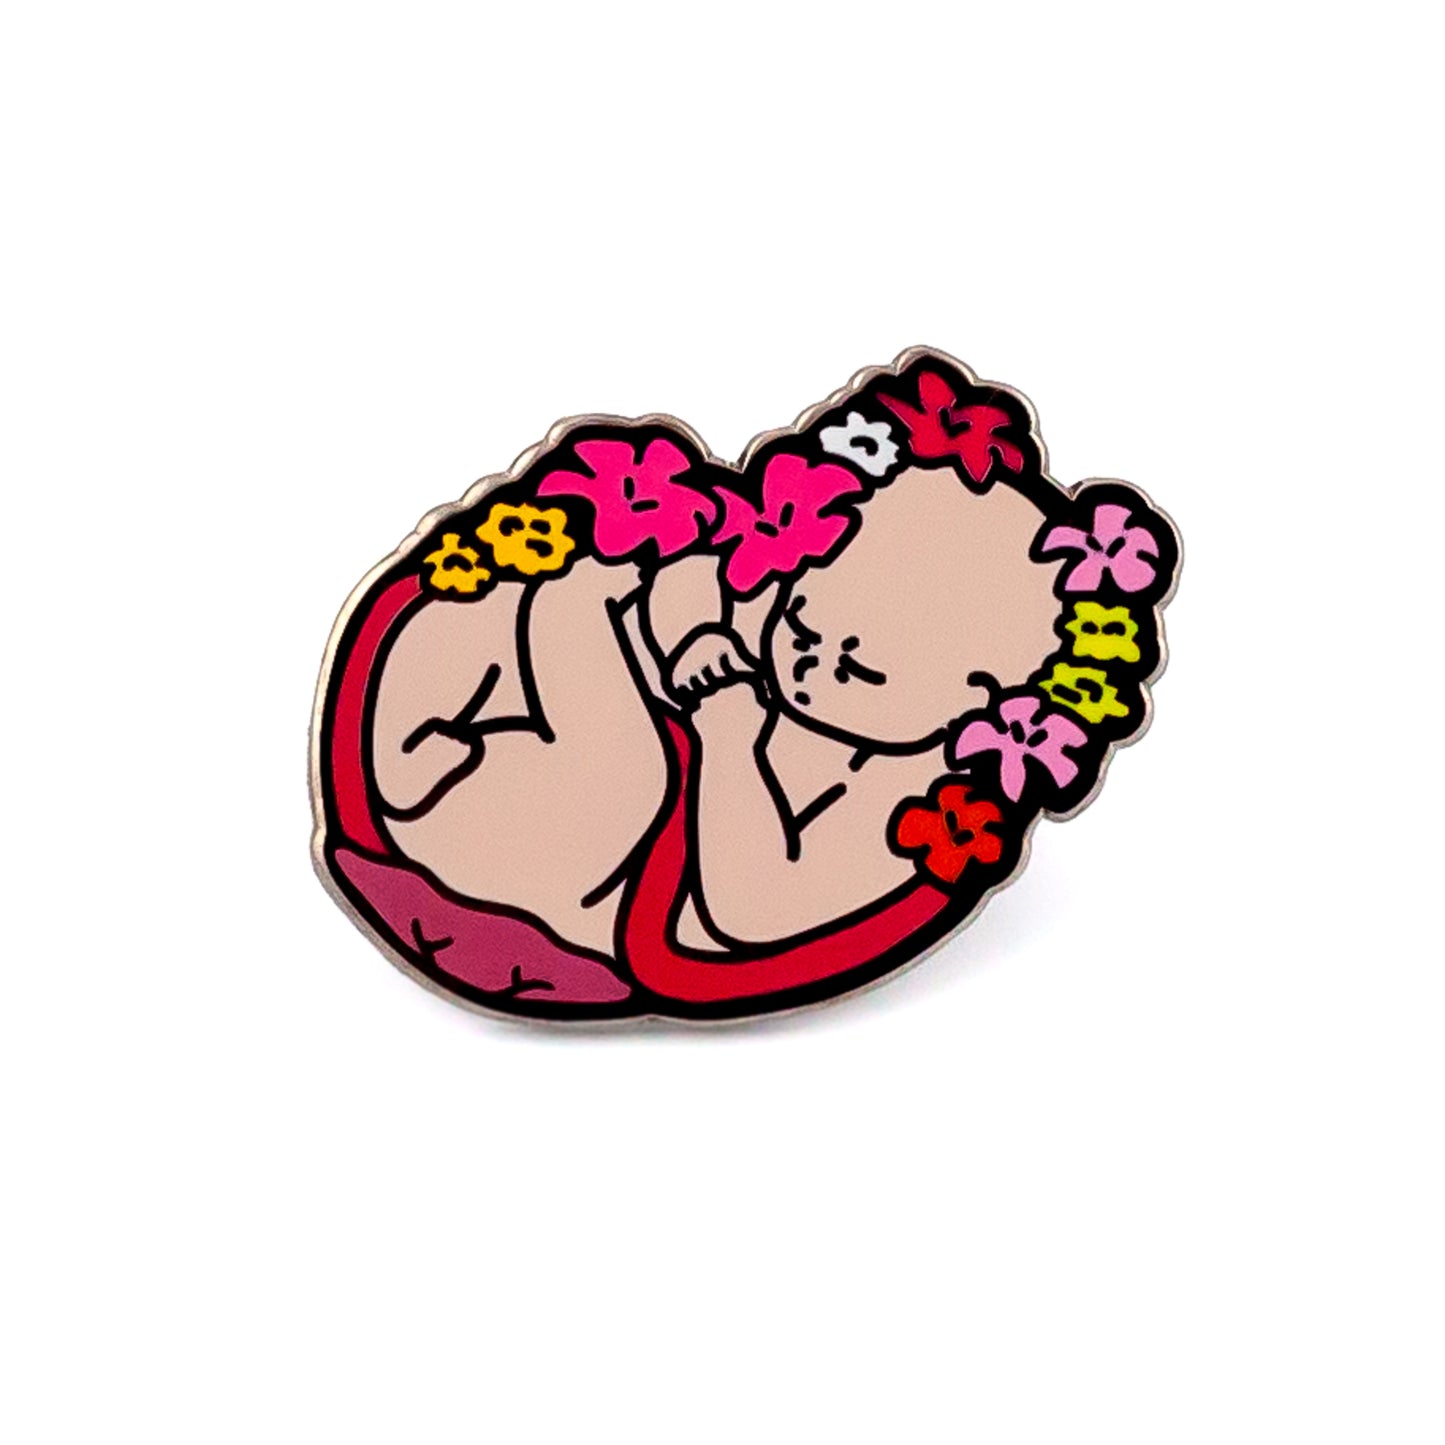 Płód dziecka otoczony kwiatami - przypinka